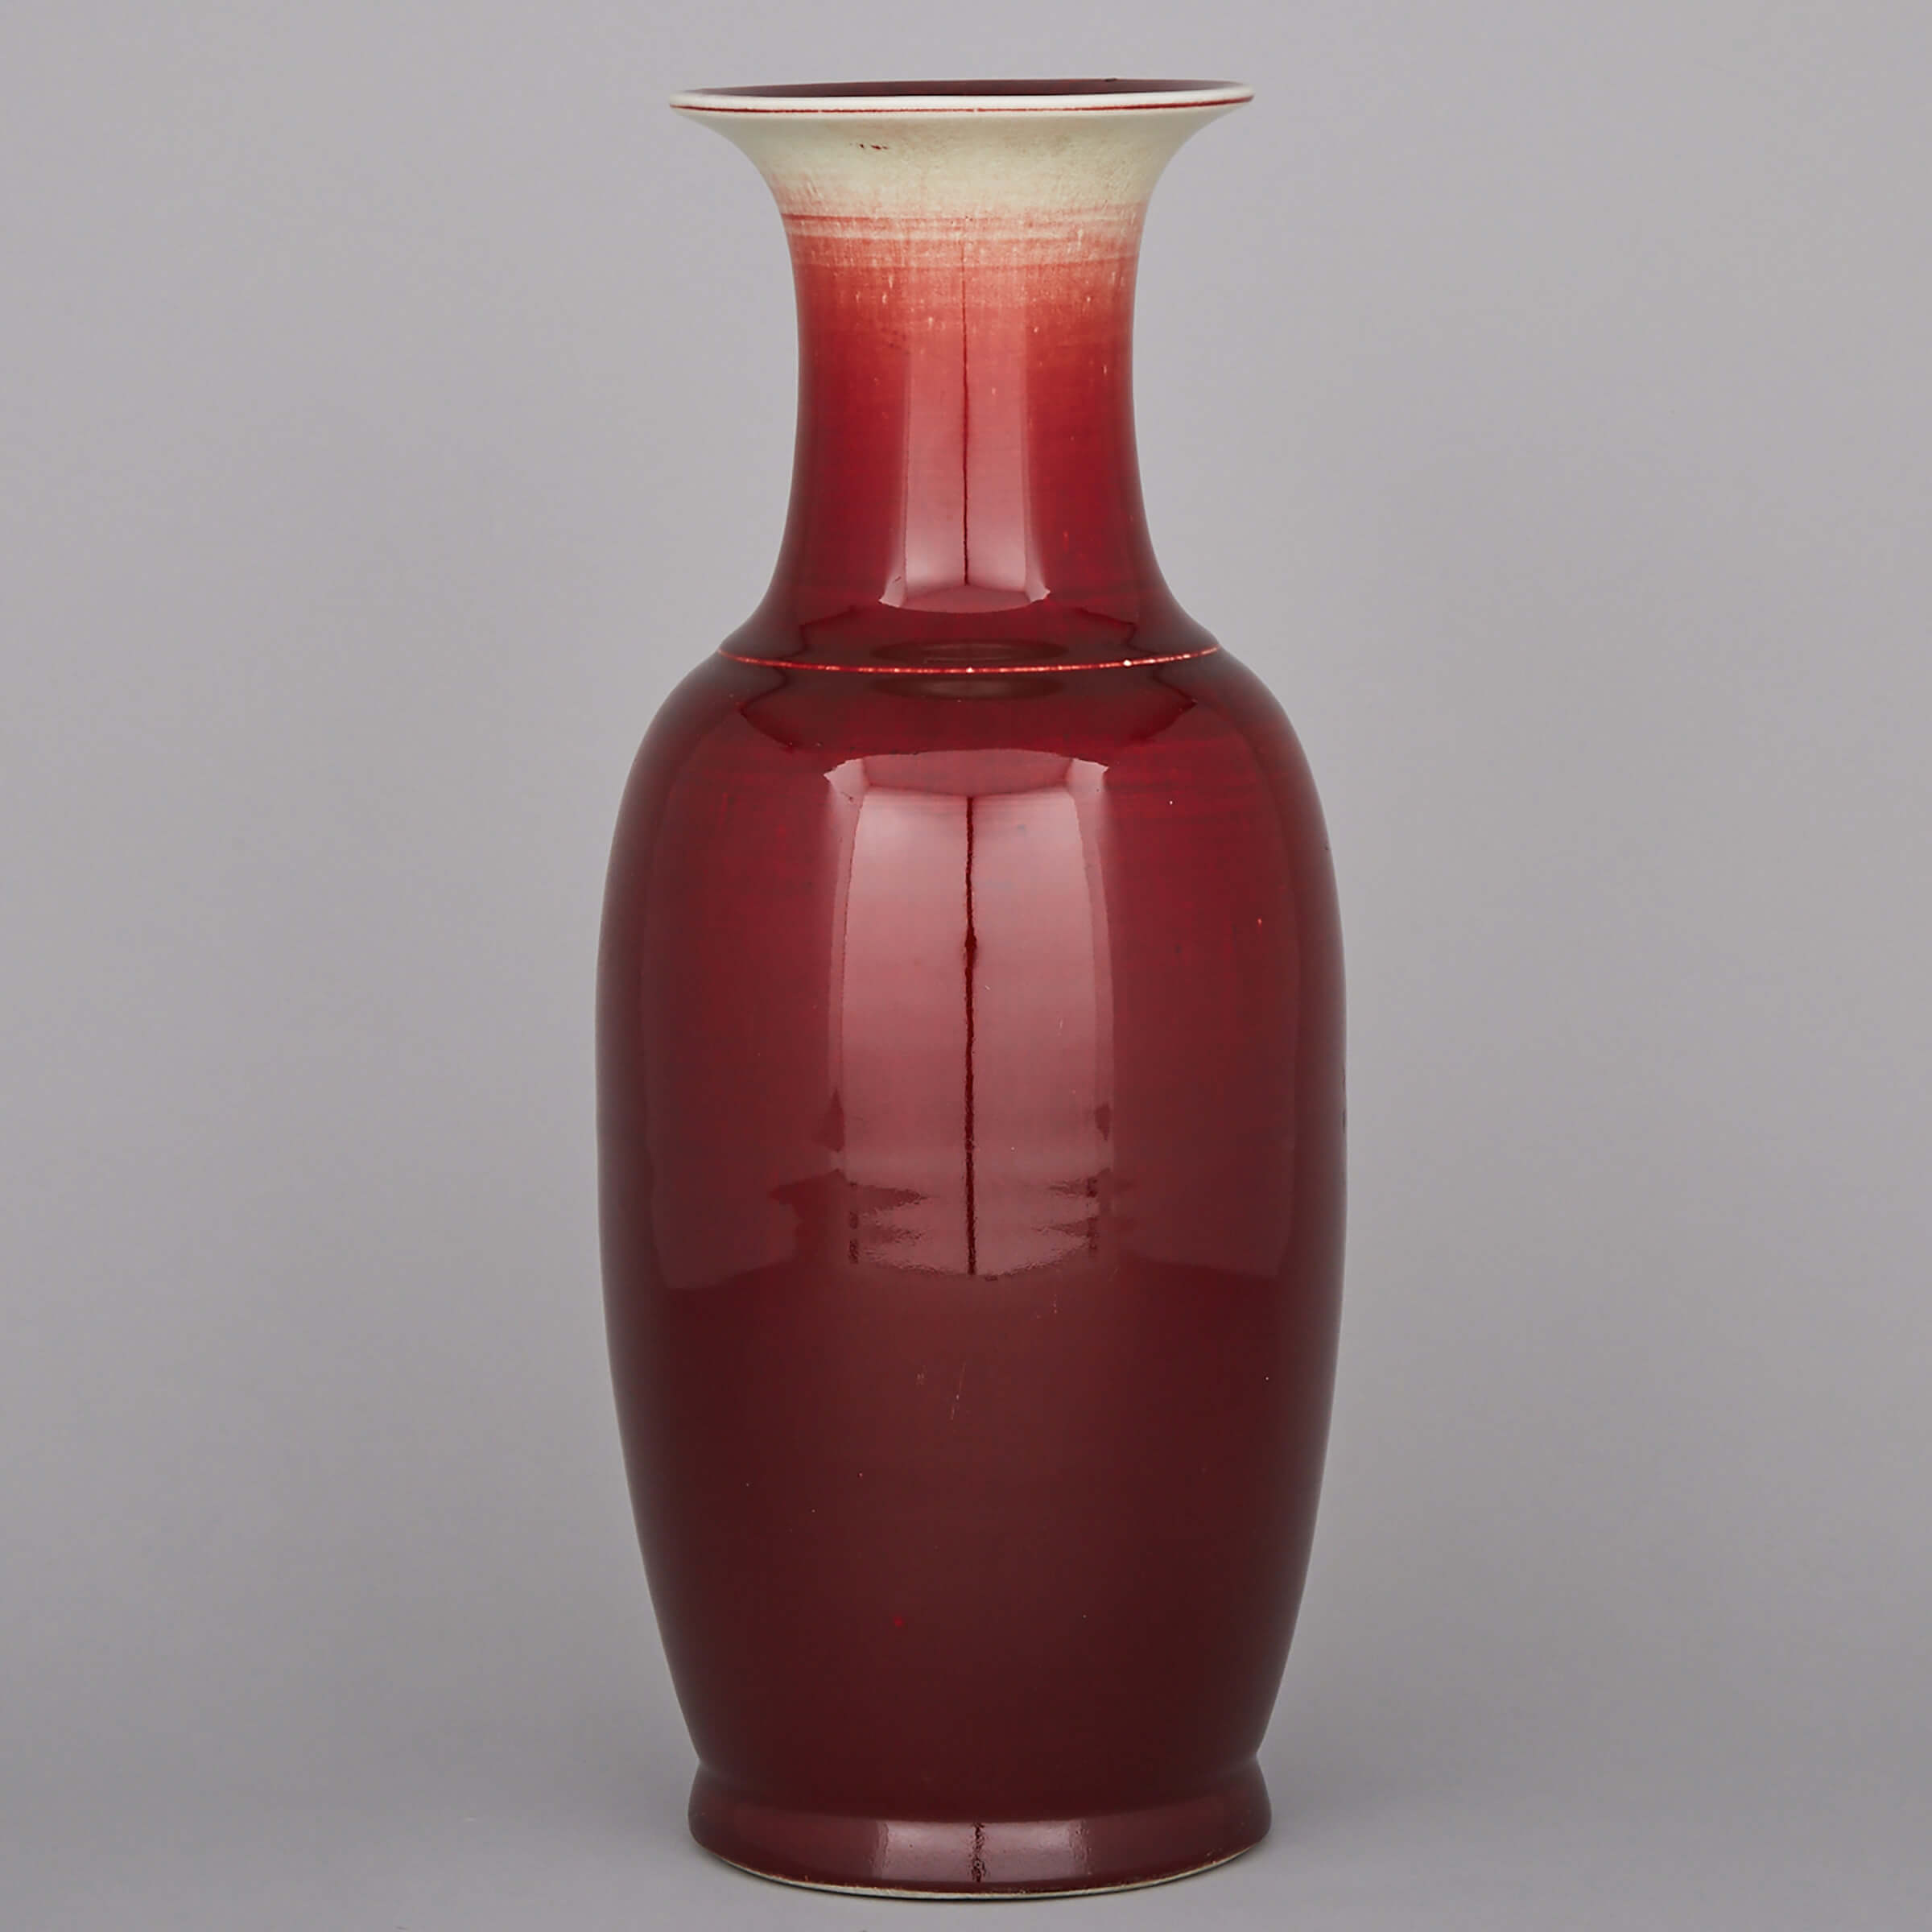 A Large Red Glazed Vase